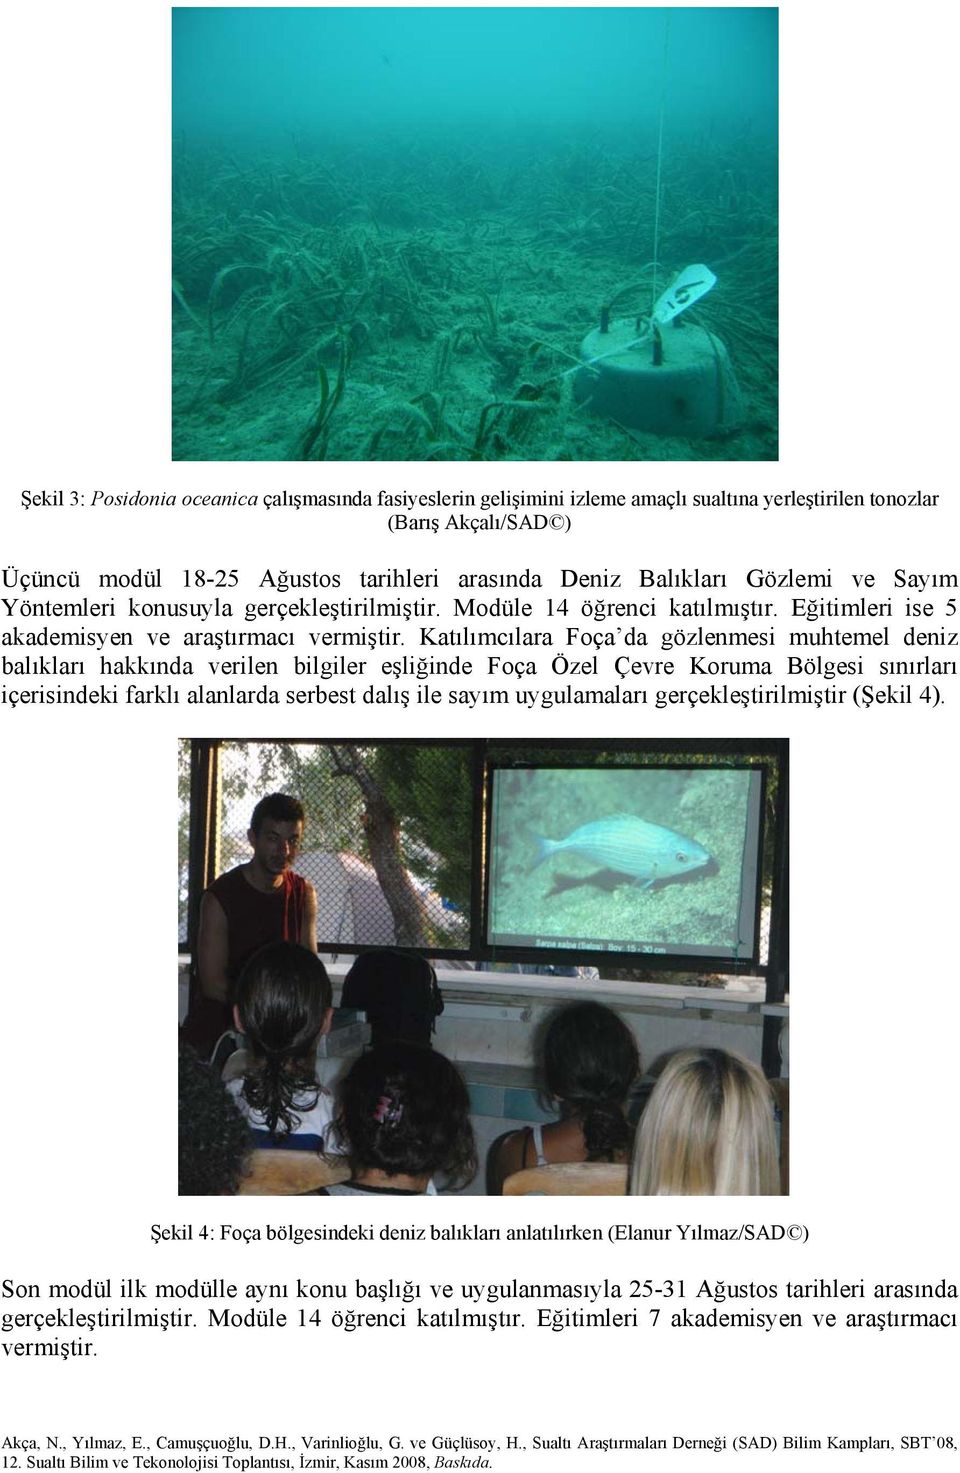 Katılımcılara Foça da gözlenmesi muhtemel deniz balıkları hakkında verilen bilgiler eşliğinde Foça Özel Çevre Koruma Bölgesi sınırları içerisindeki farklı alanlarda serbest dalış ile sayım